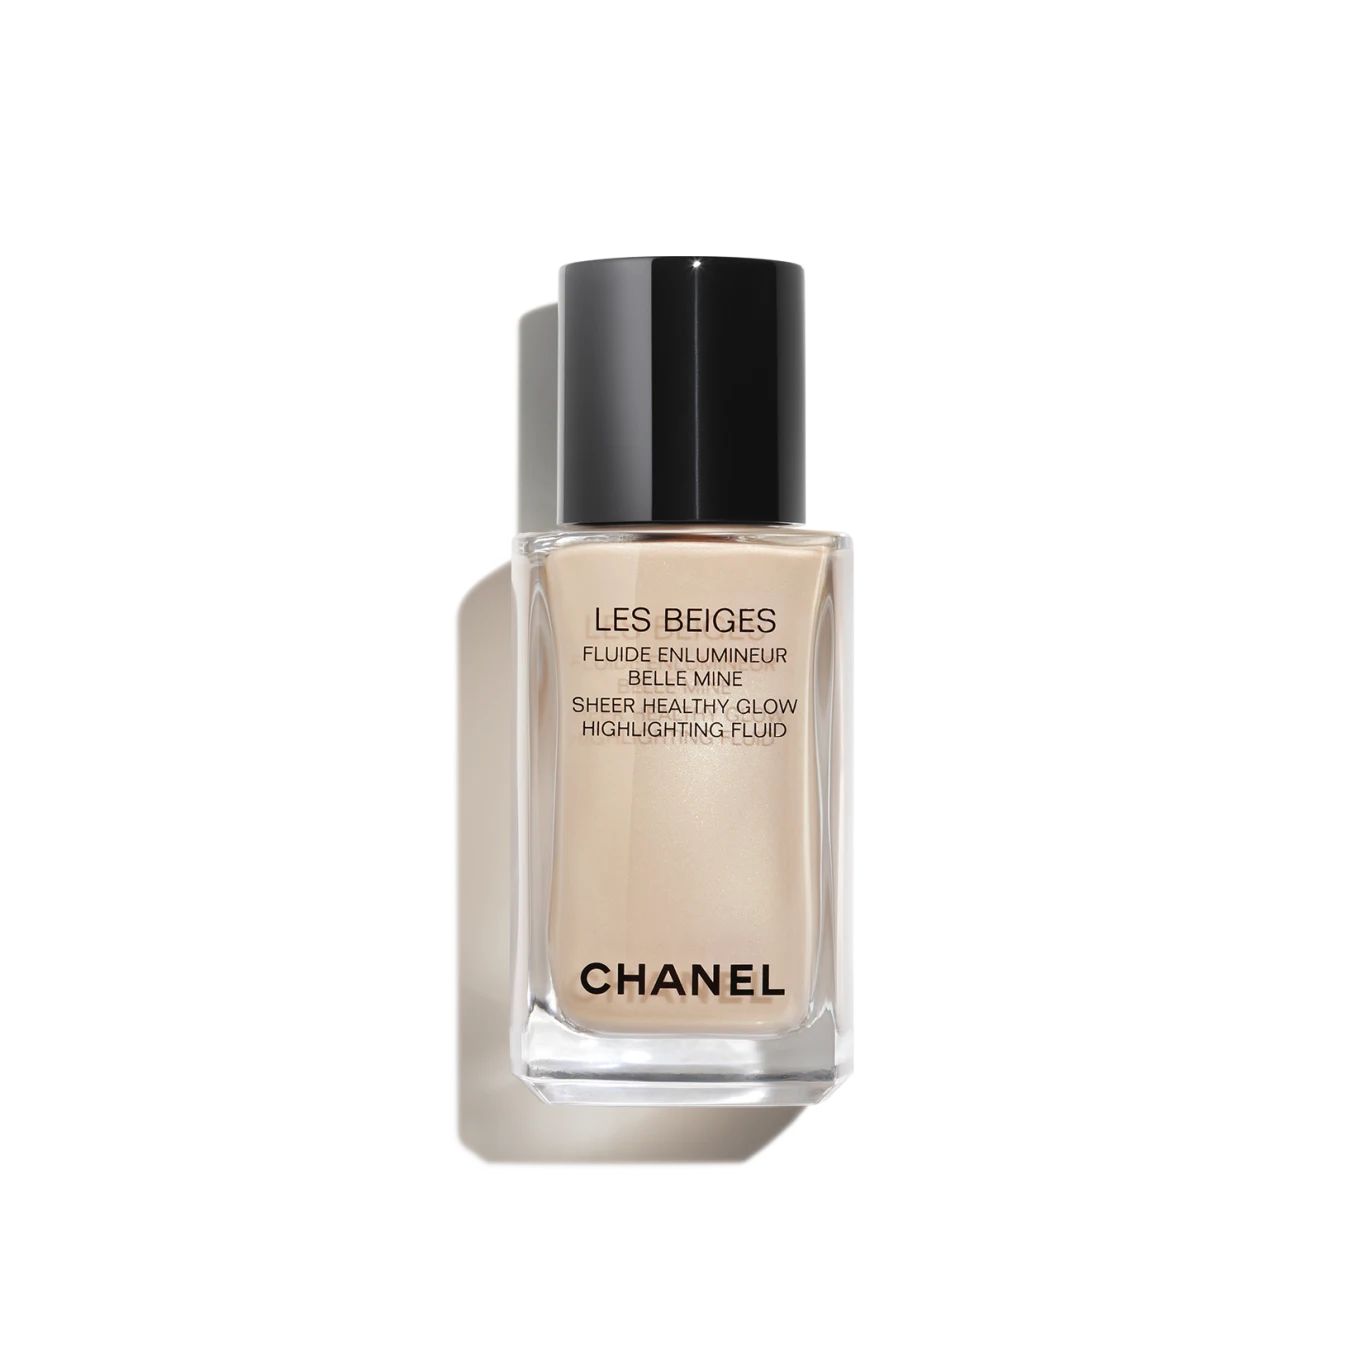 LES BEIGES | Chanel, Inc. (US)